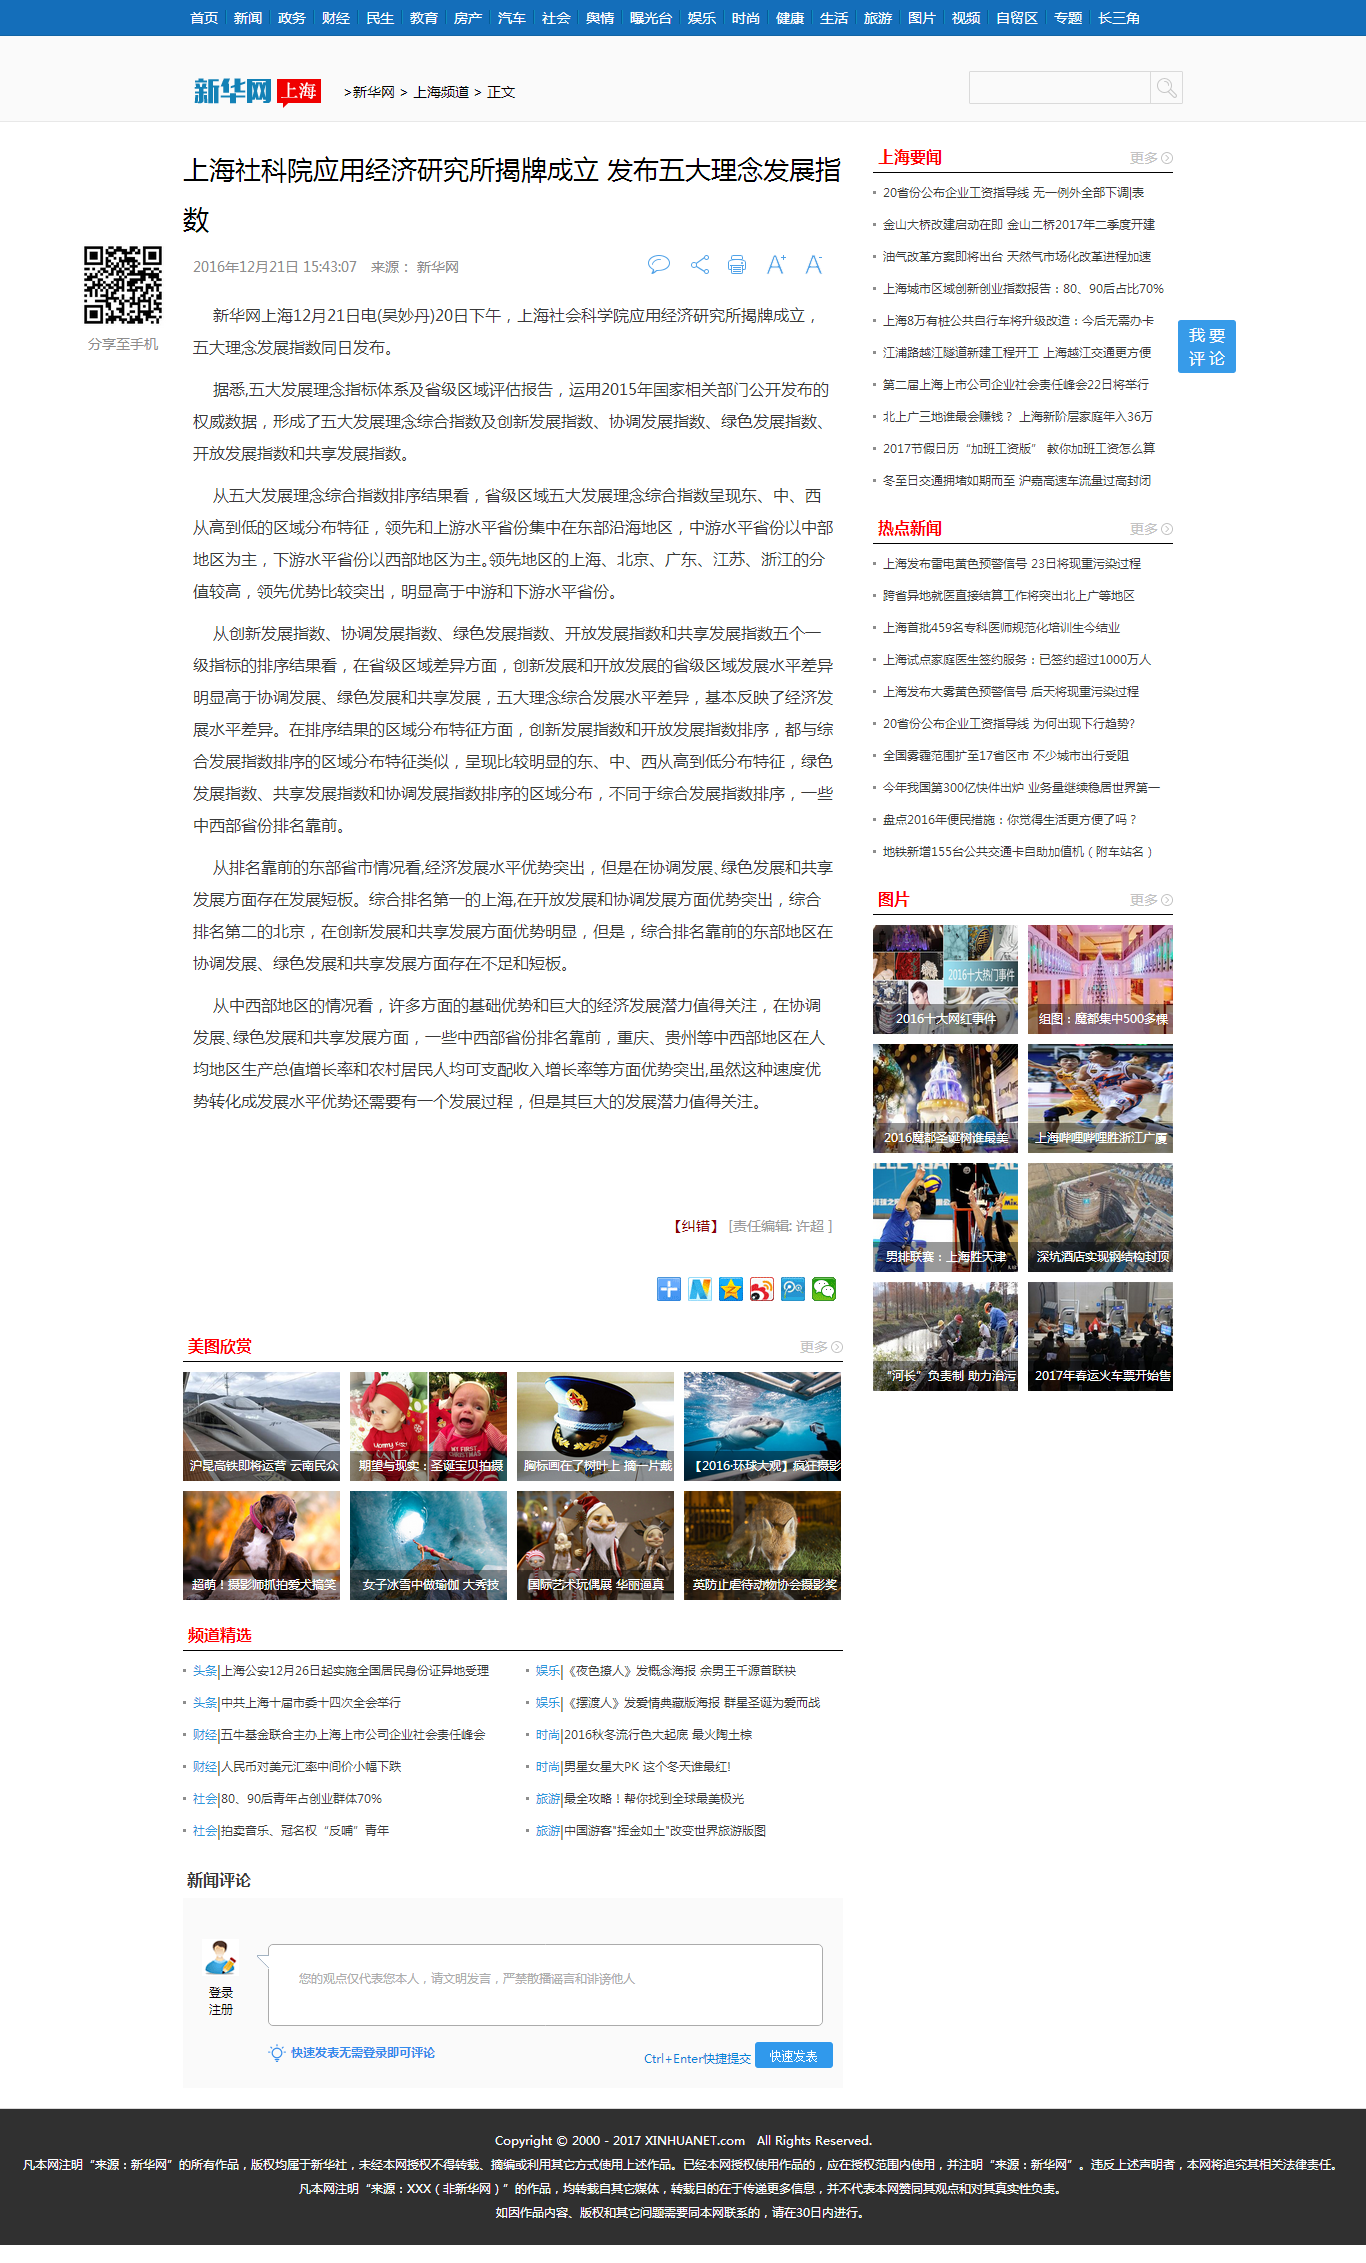 上海社科院应用经济研究所揭牌成立 发布五大理念发展指数-新华网.png